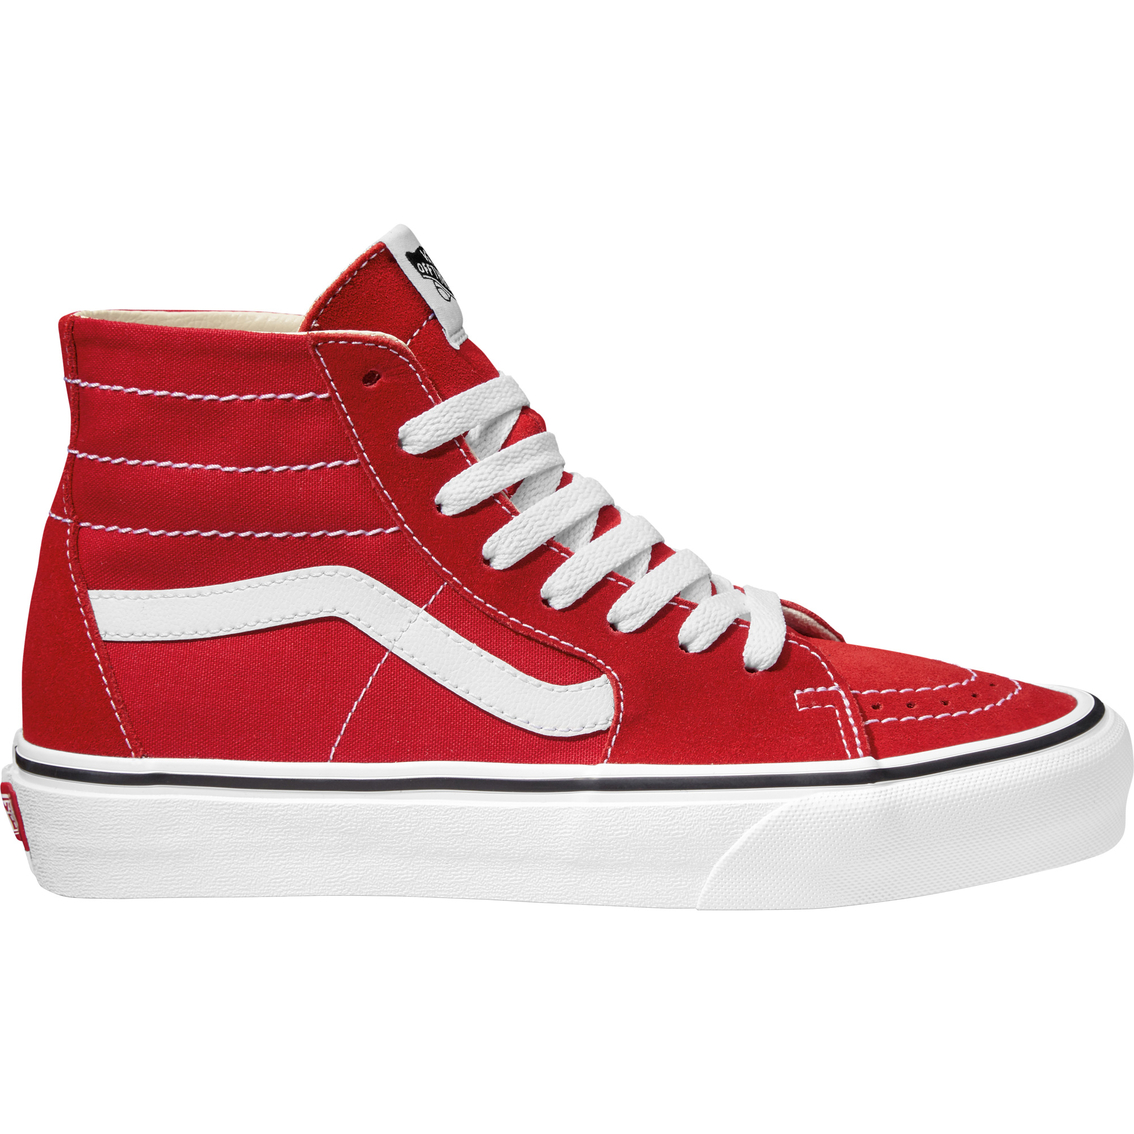 Vans Sk8 Hi Top Tapered Sneakers, Red | Sneakers | Back To School Shop ...